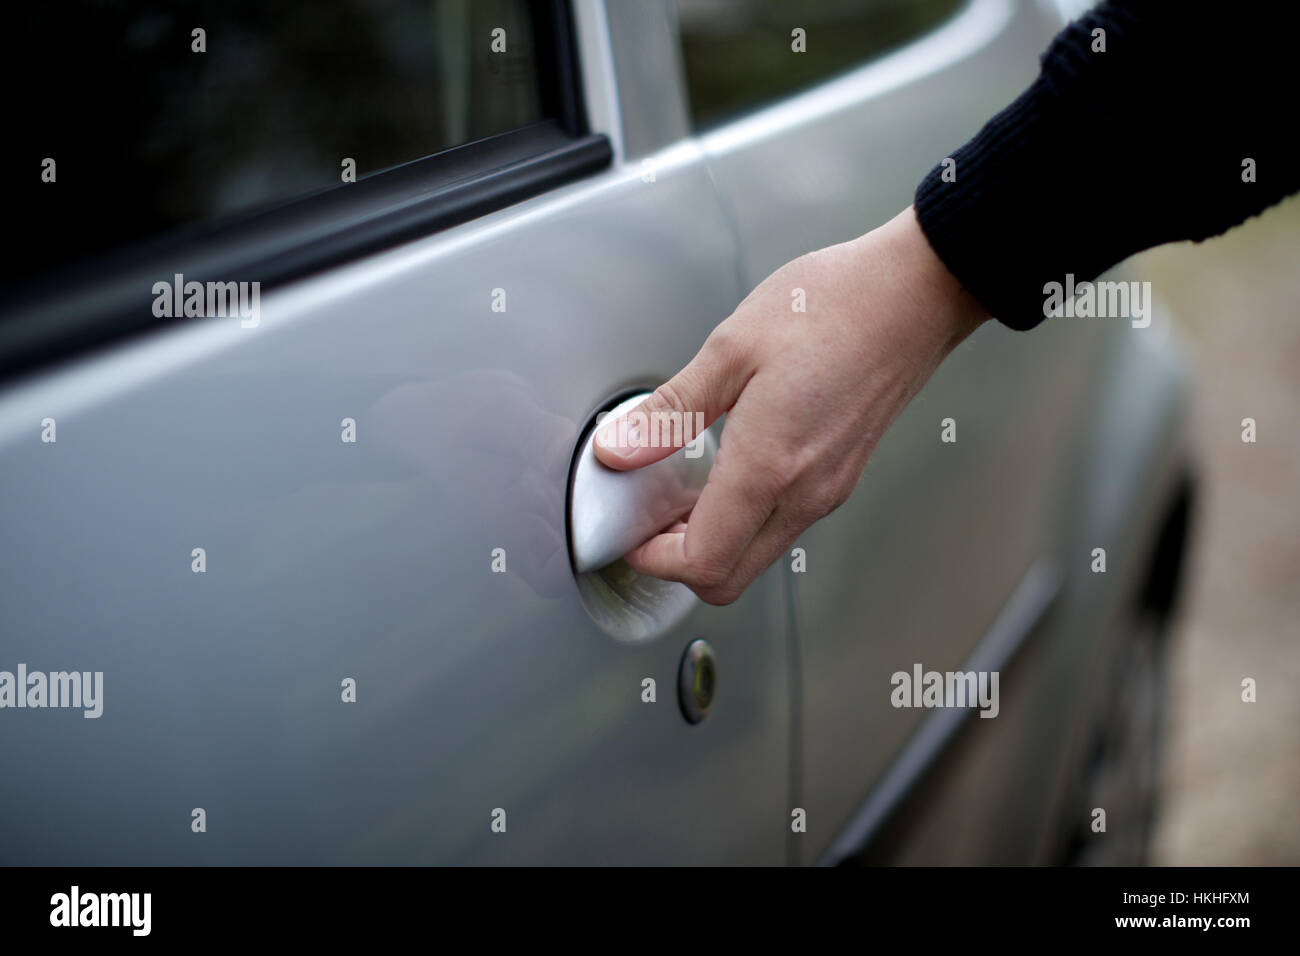 La mano humana la apertura de puertas de coches. VEHÍCULO, automóvil, la  manija de la puerta Fotografía de stock - Alamy